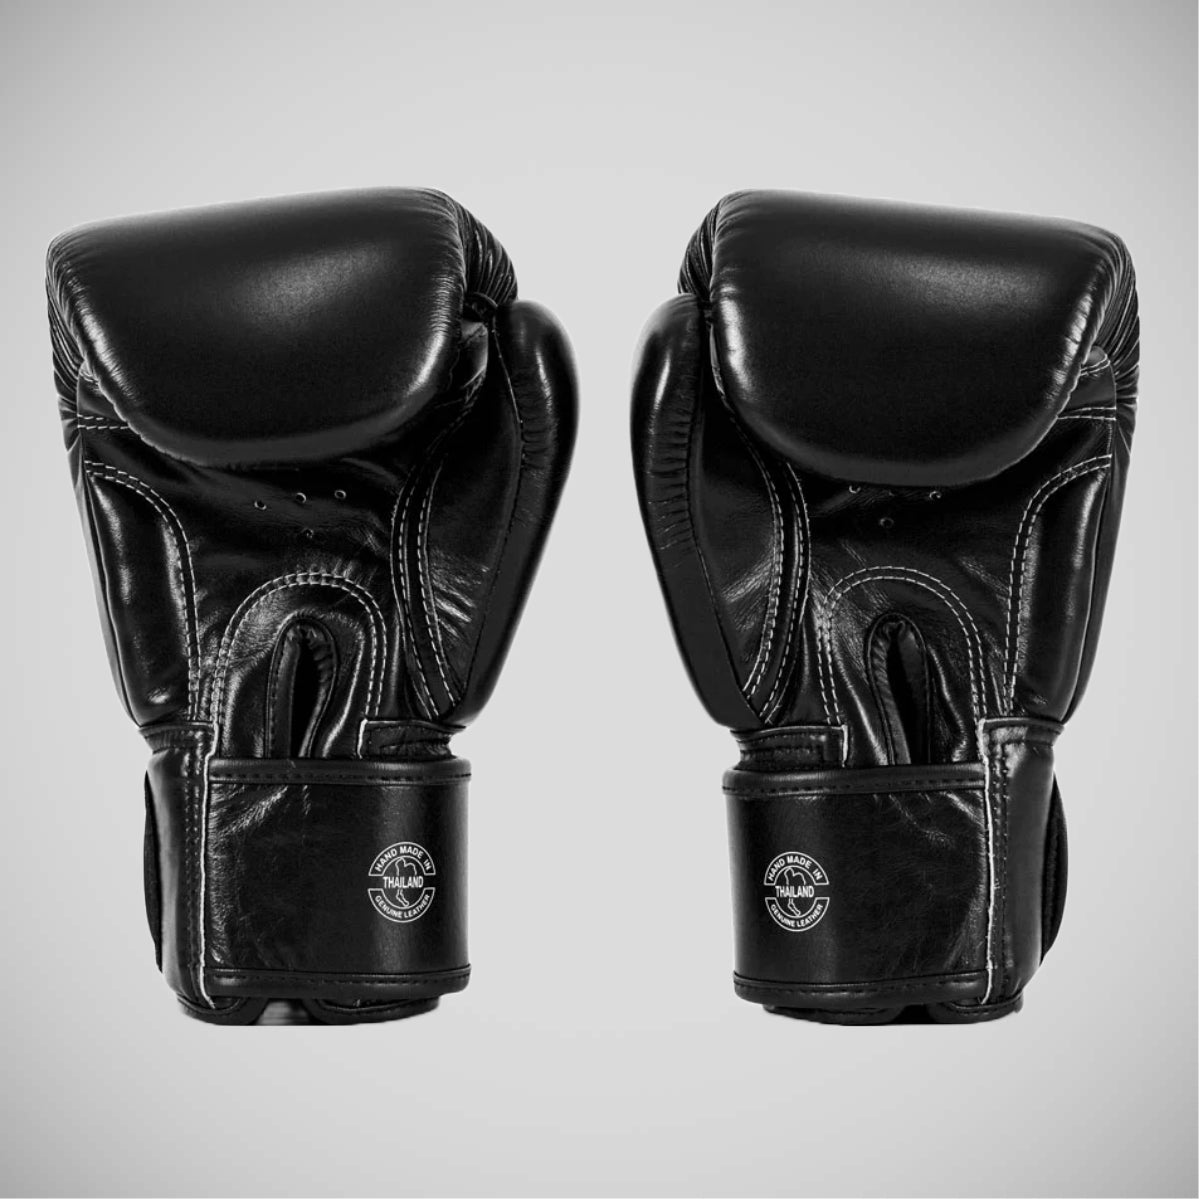 Black Fairtex BGV X ONE Championship Boxing Gloves